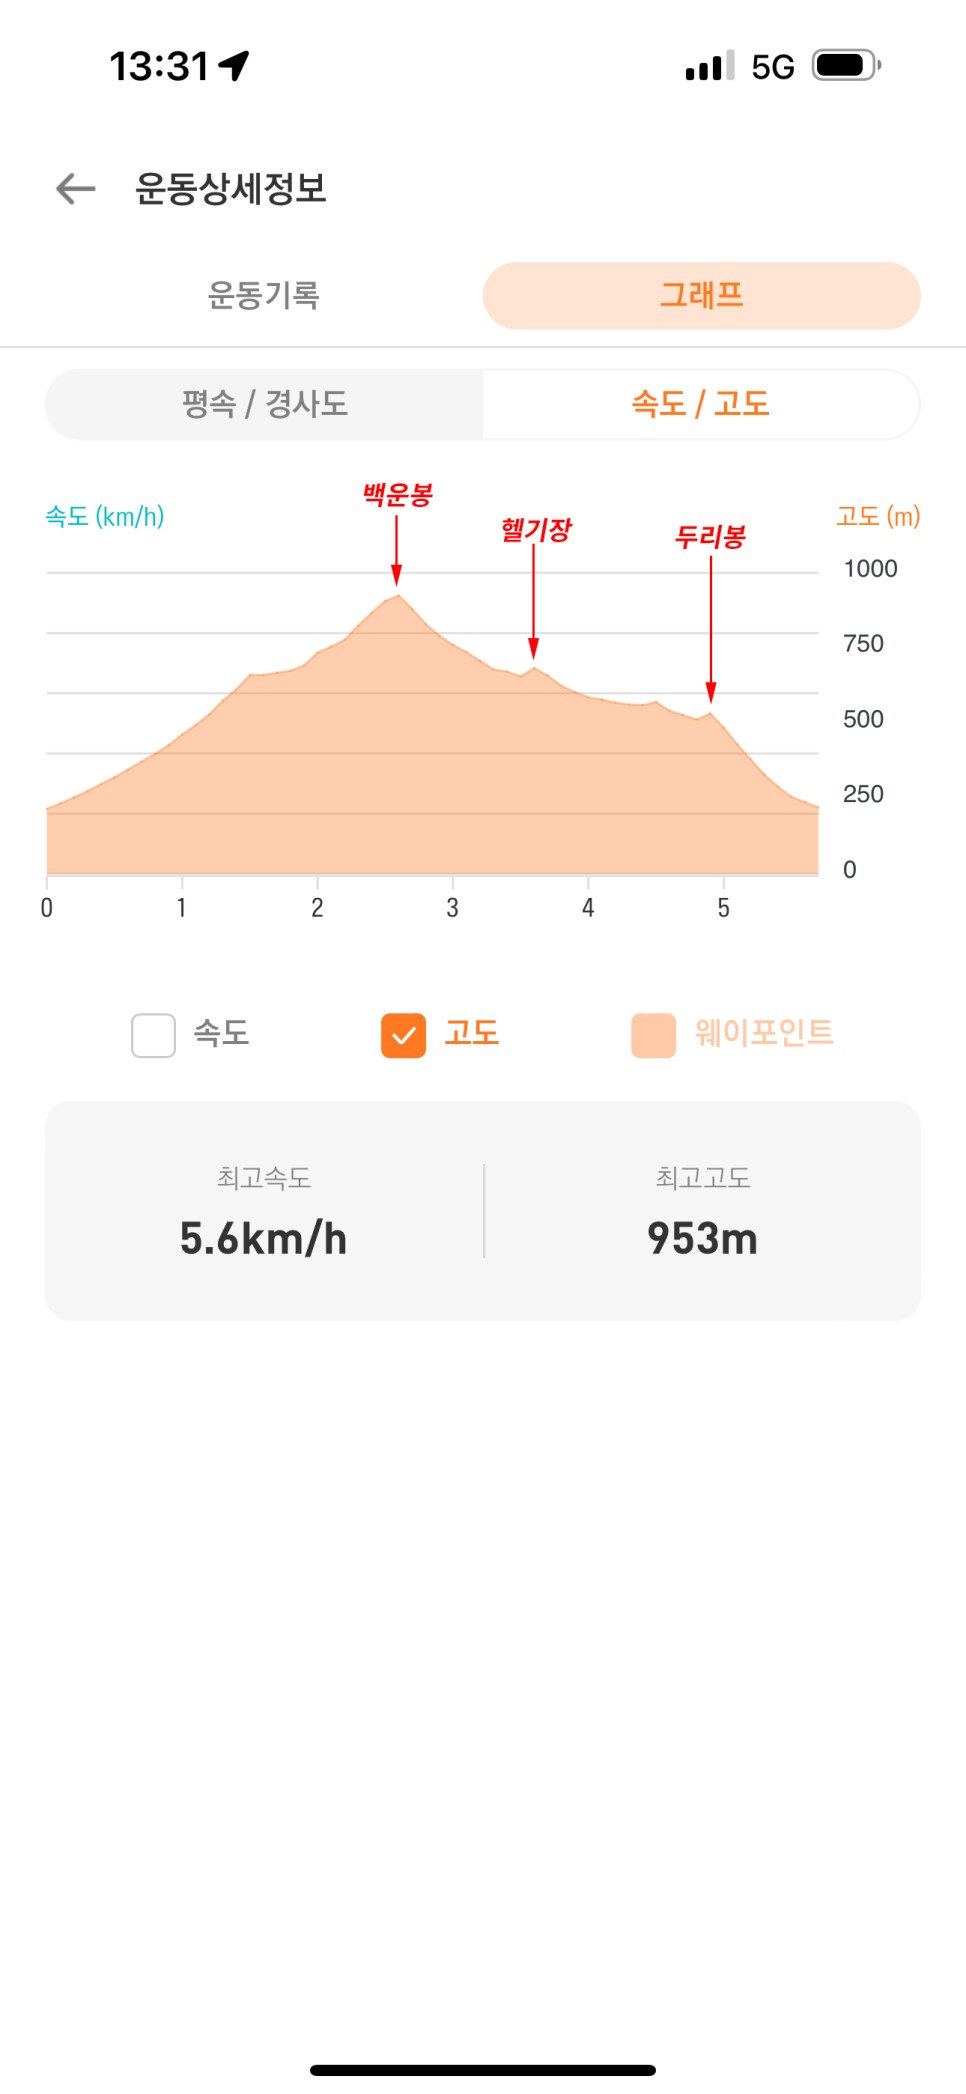 [193] 양평 백운봉 ~ 두리봉 (용문산 자연휴양림 원점회귀)